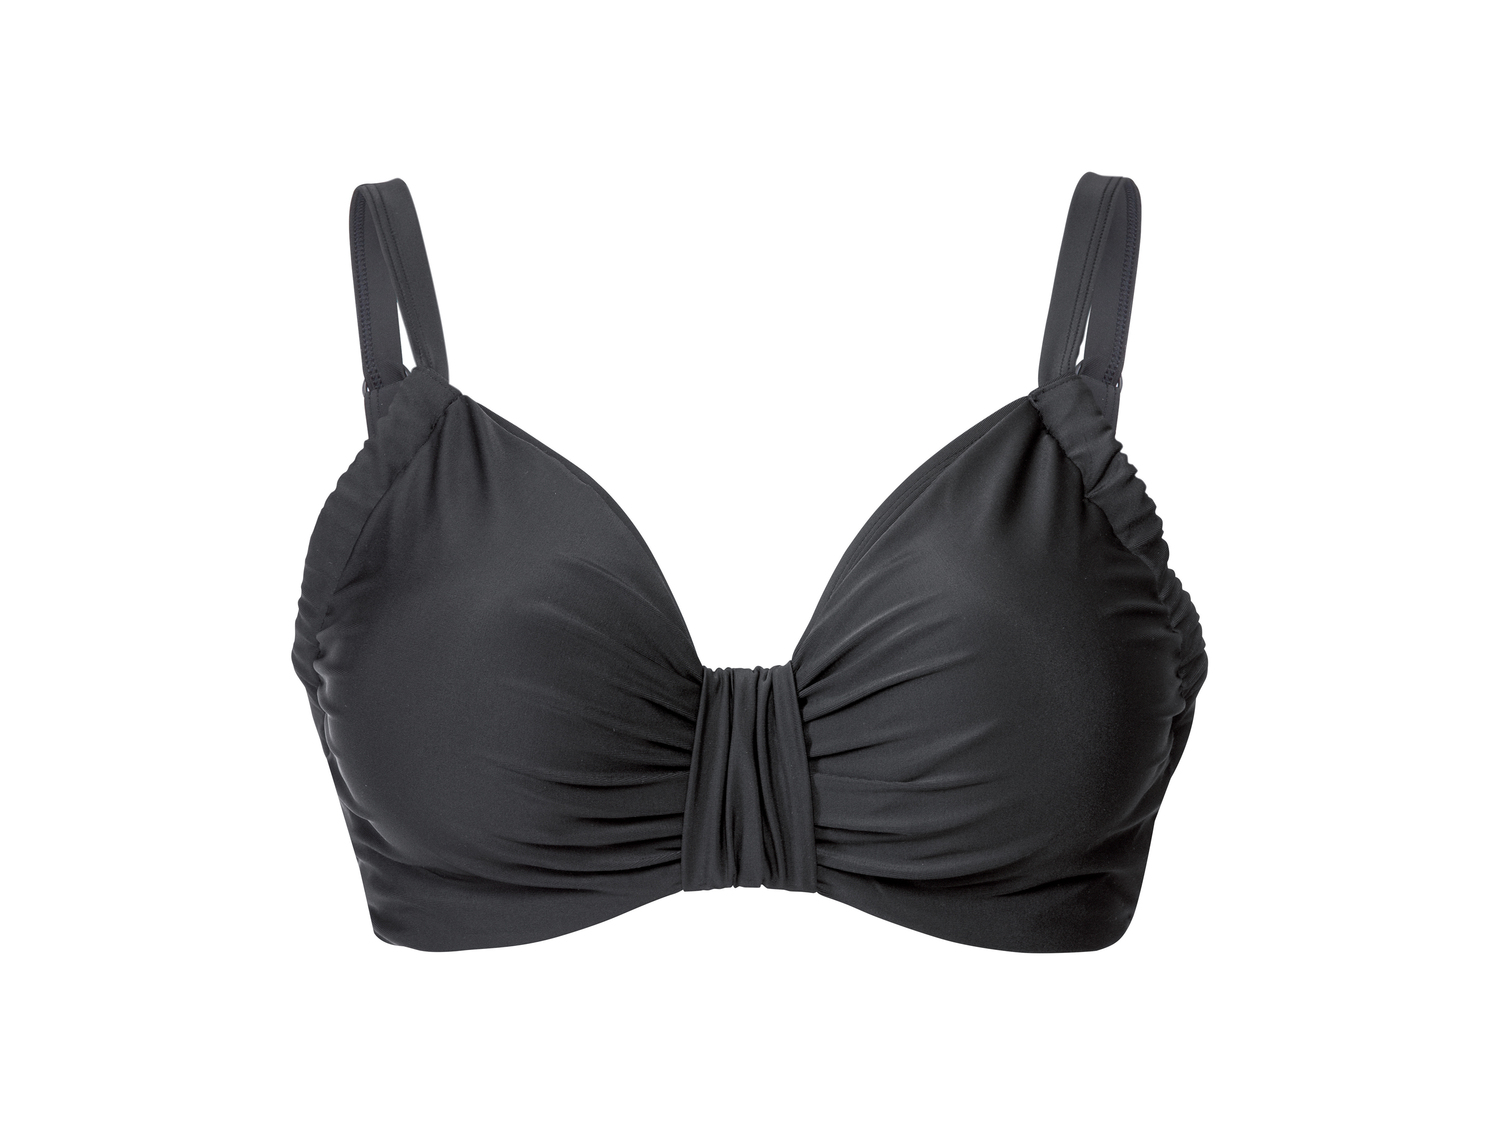 Reggiseno-bikini conformato da donna Esmara, prezzo 4.99 € 
Misure: 5C-8C
Taglie ...